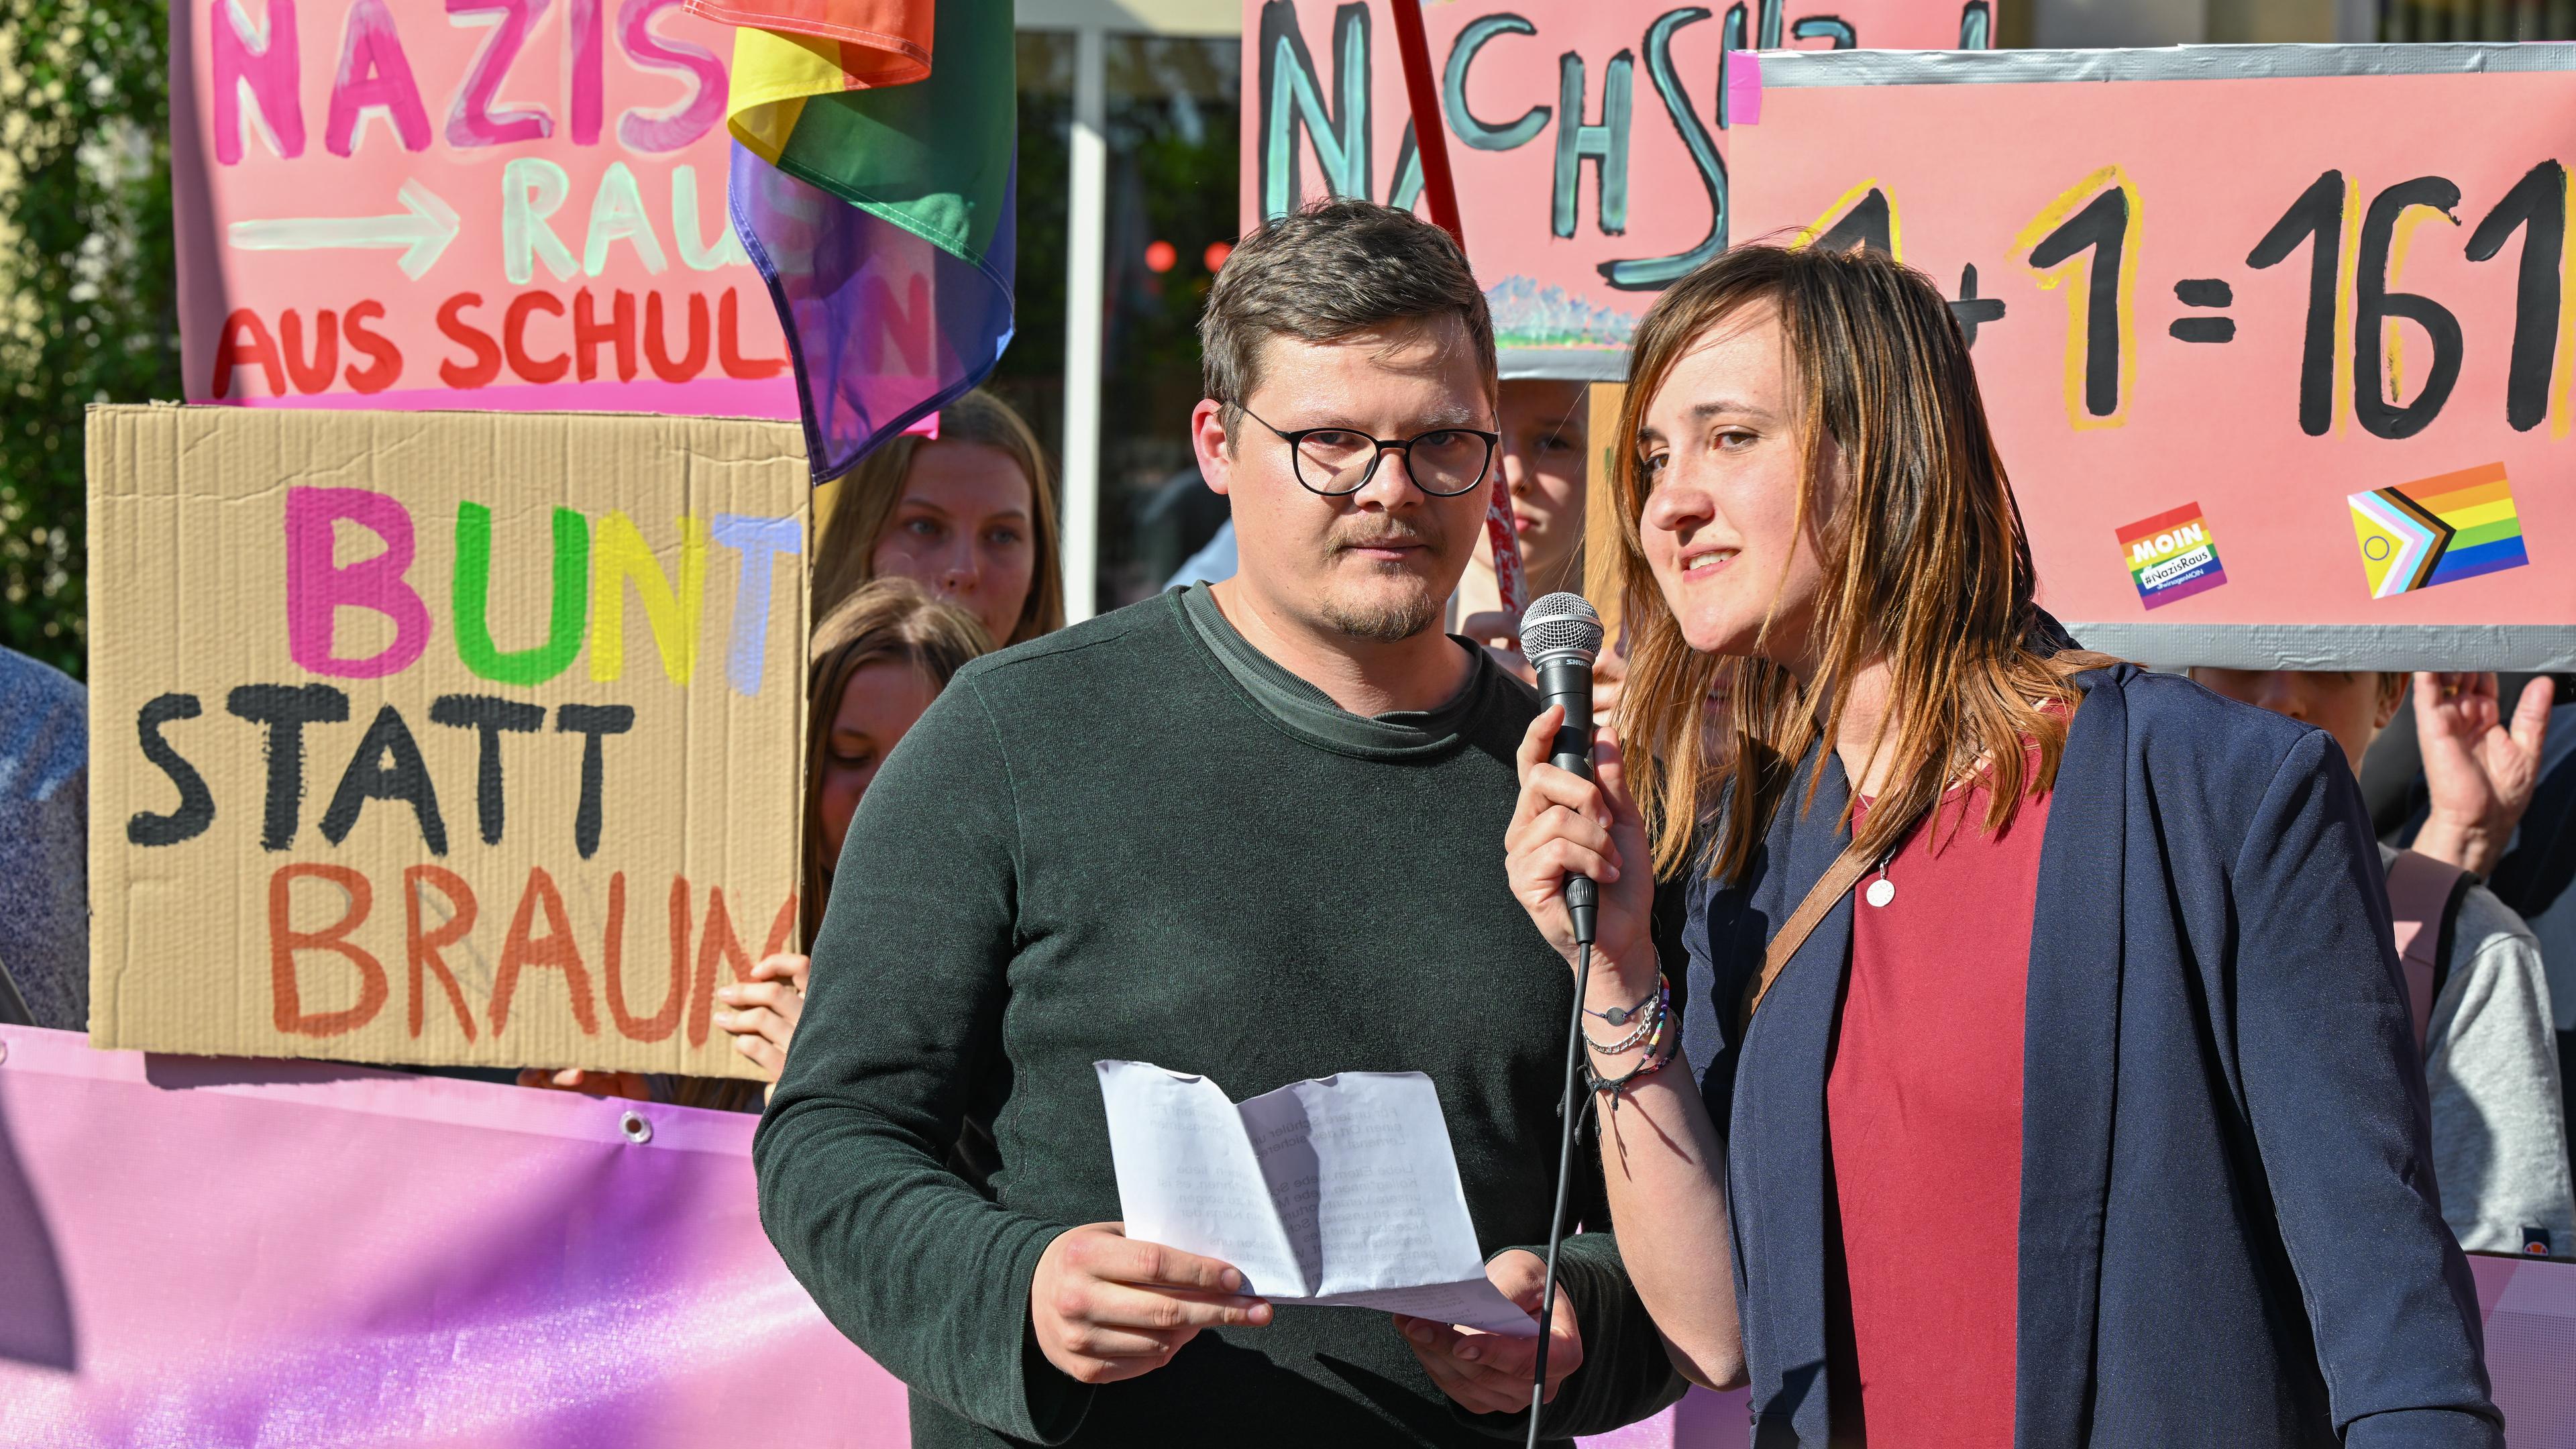 Der Lehrer Max Teske und seine Kollegin Laura Nickel bei einer Kundgebung. Im Hintergrund Plakate.